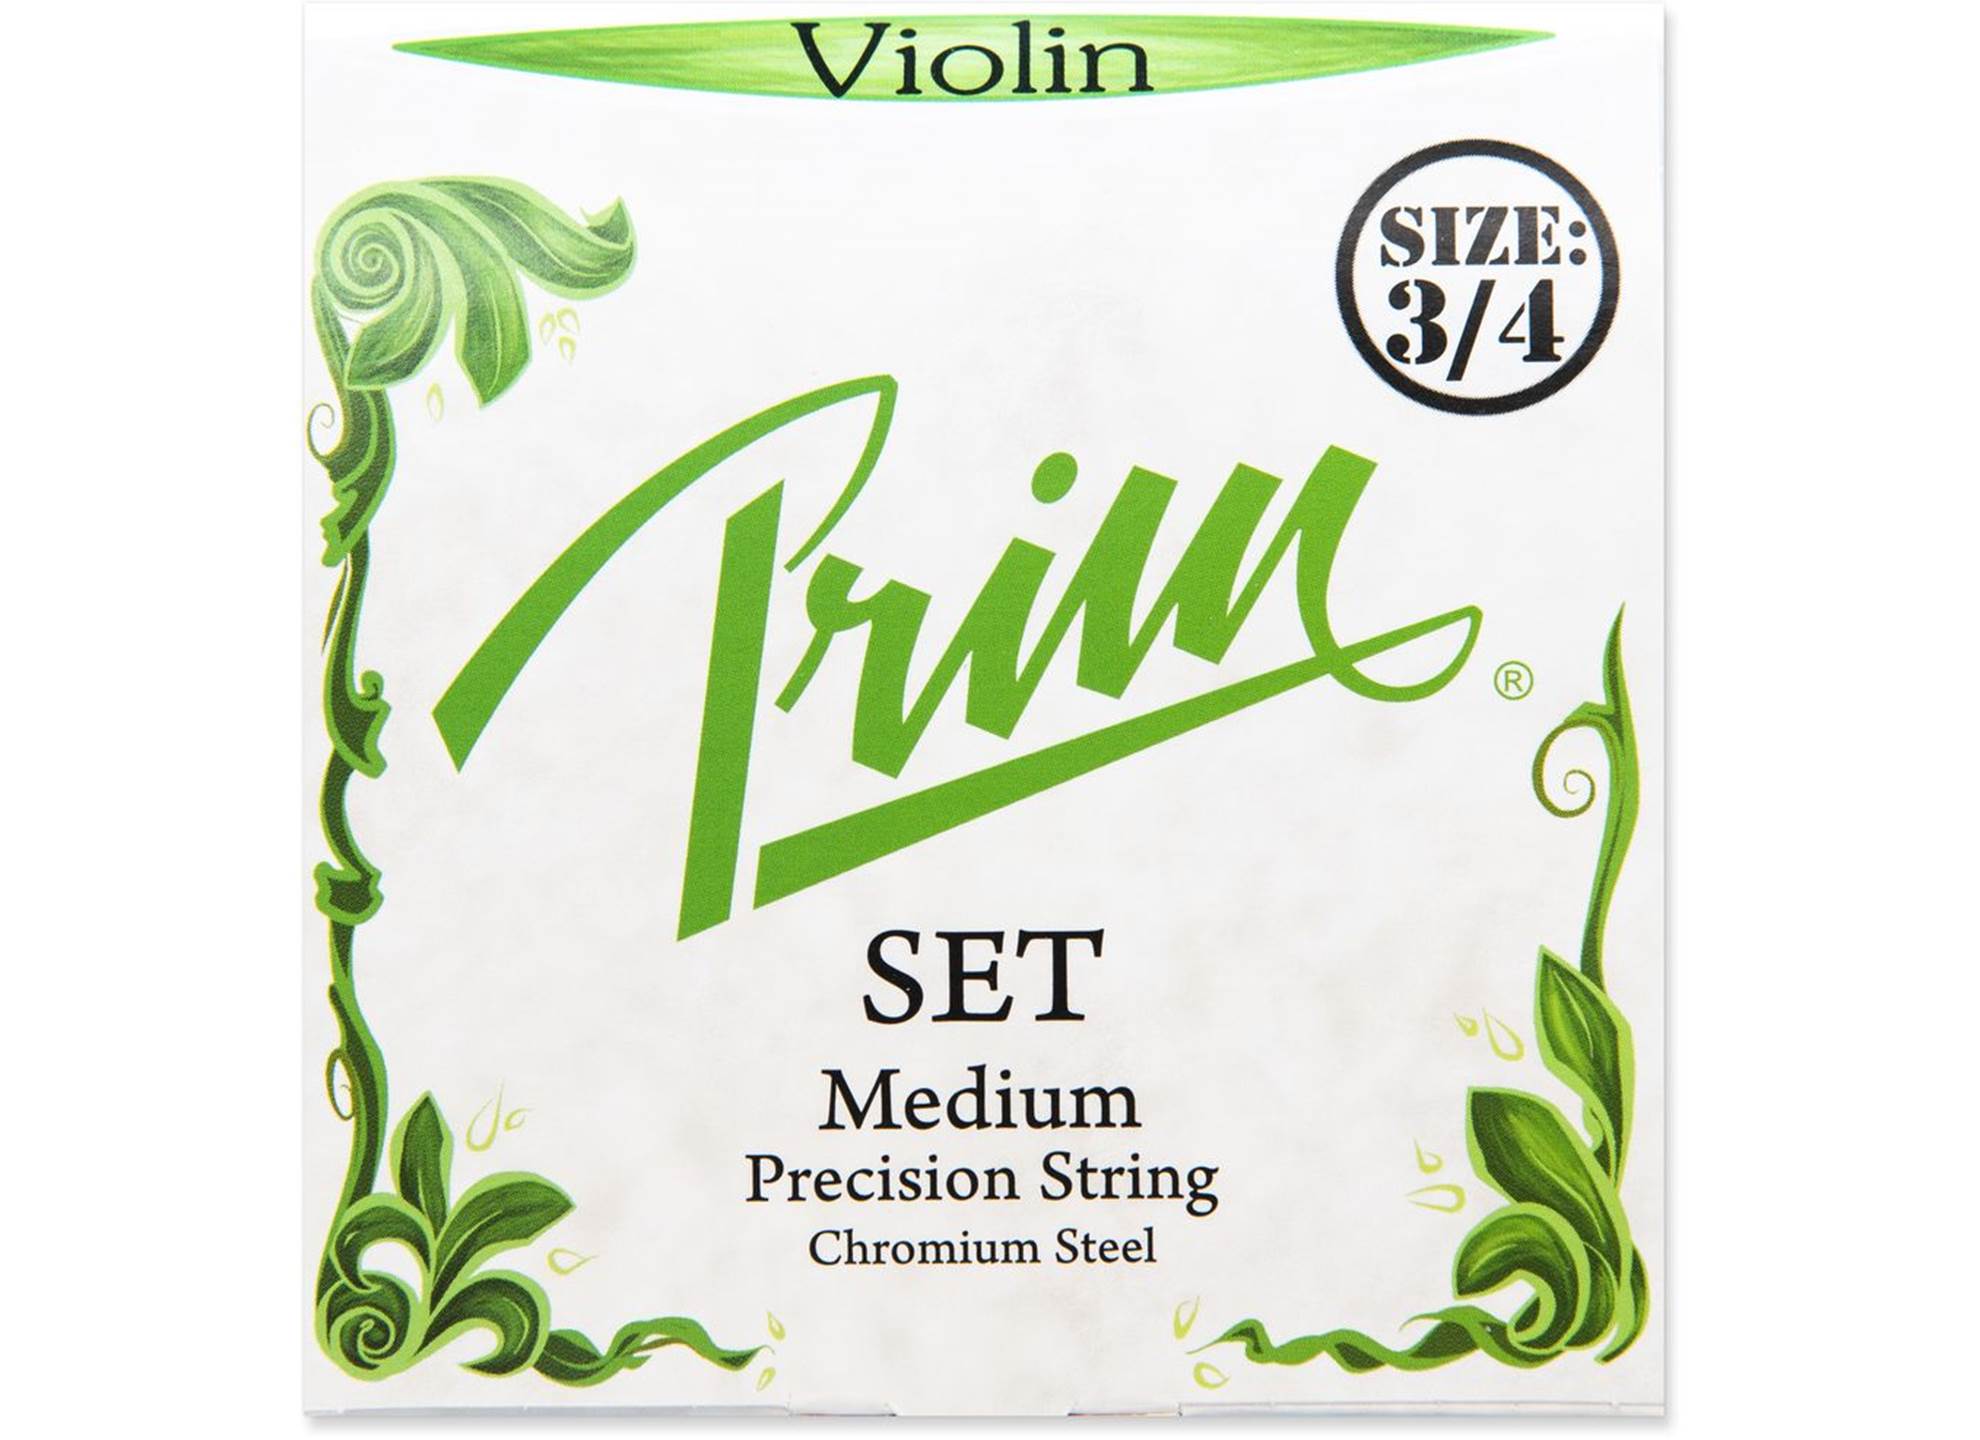 Violin 3/4 Set Medium